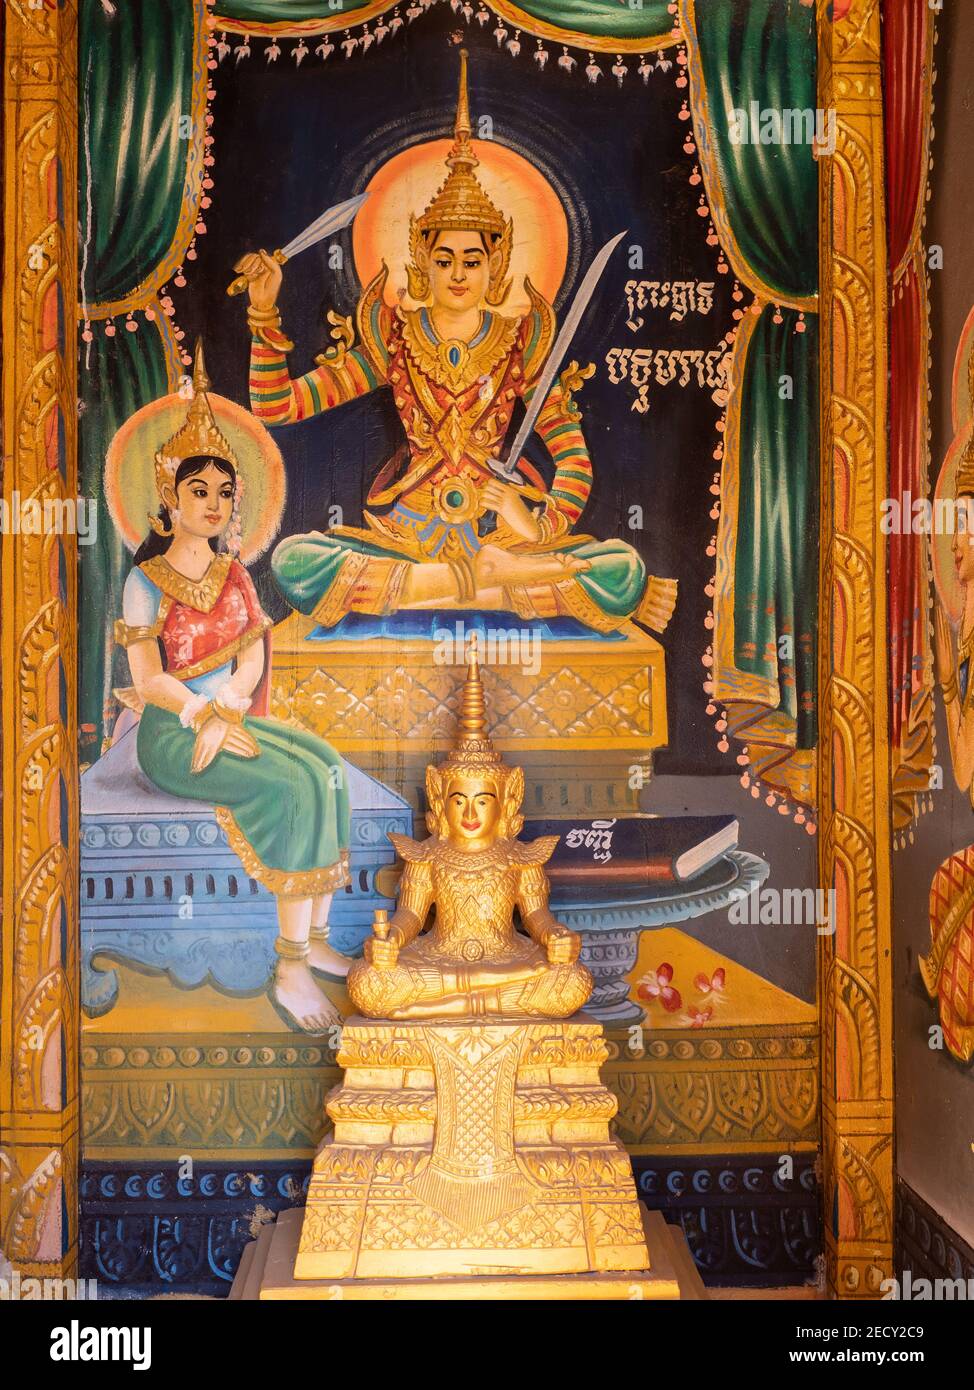 Image de Bouddha et décorations murales à Wat Kean Kliang, un temple bouddhiste à Phnom Penh, Cambodge, situé entre le Tonle SAP et le Mékong. Banque D'Images